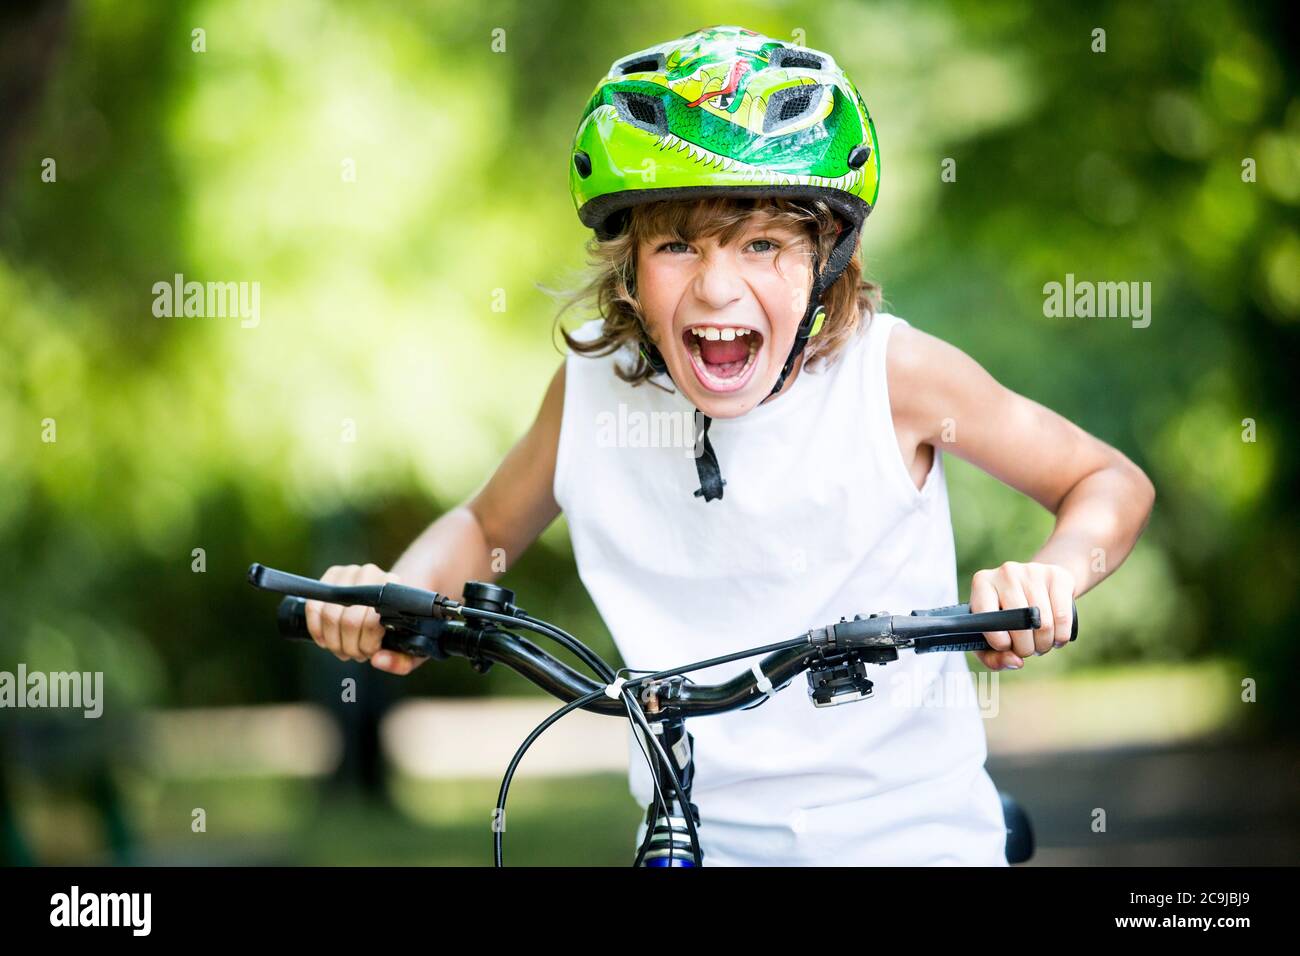 Ragazzo che indossa un casco da bicicletta e seduto in bicicletta nel parco, gridando, ritratto. Foto Stock